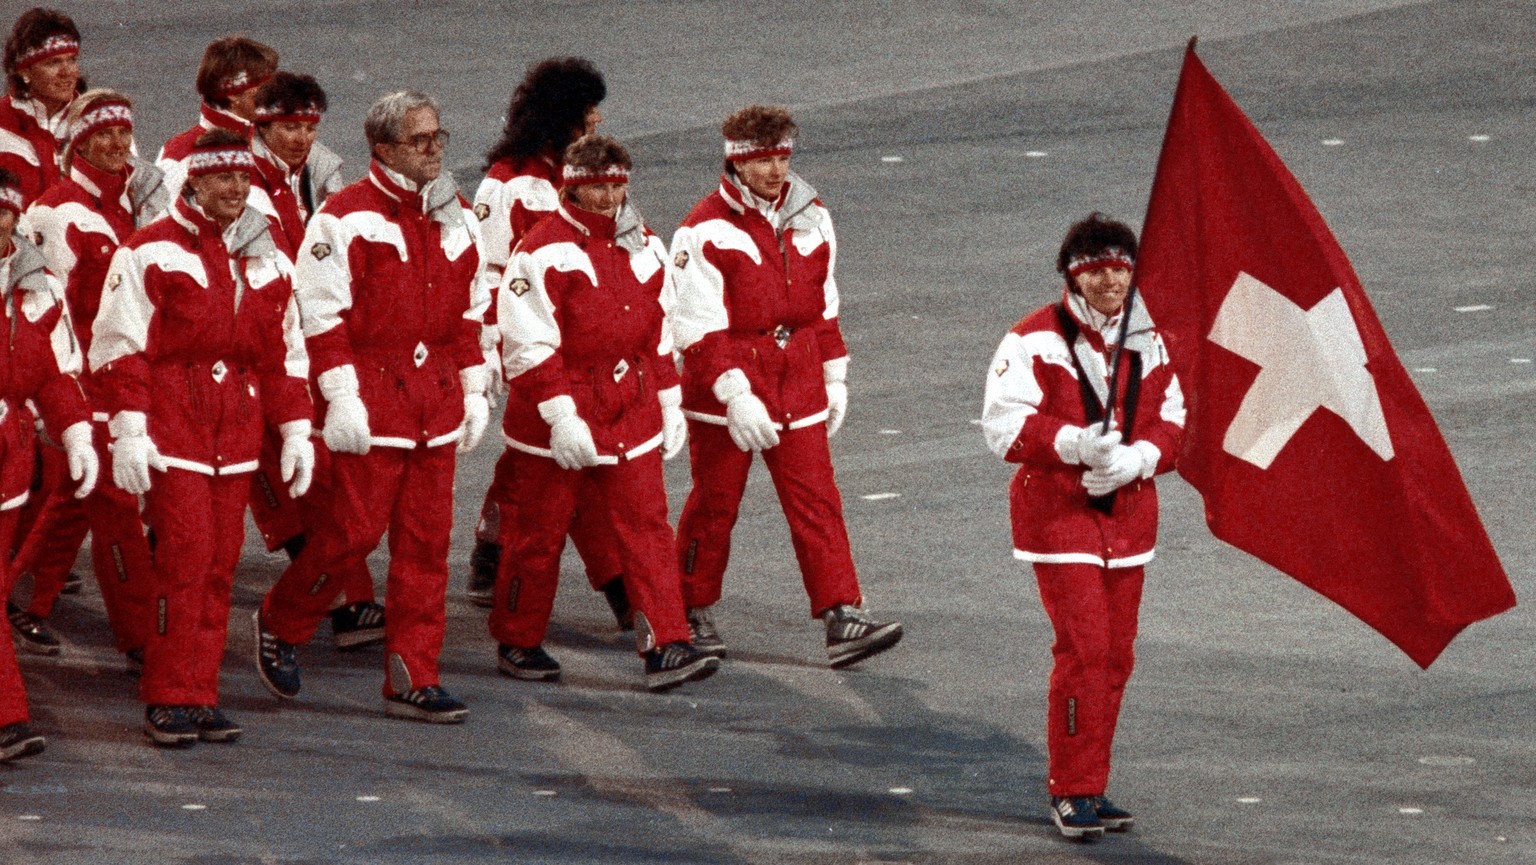 Fahnenträgerin Vreni Schneider bei den Olympischen Winterspielen.